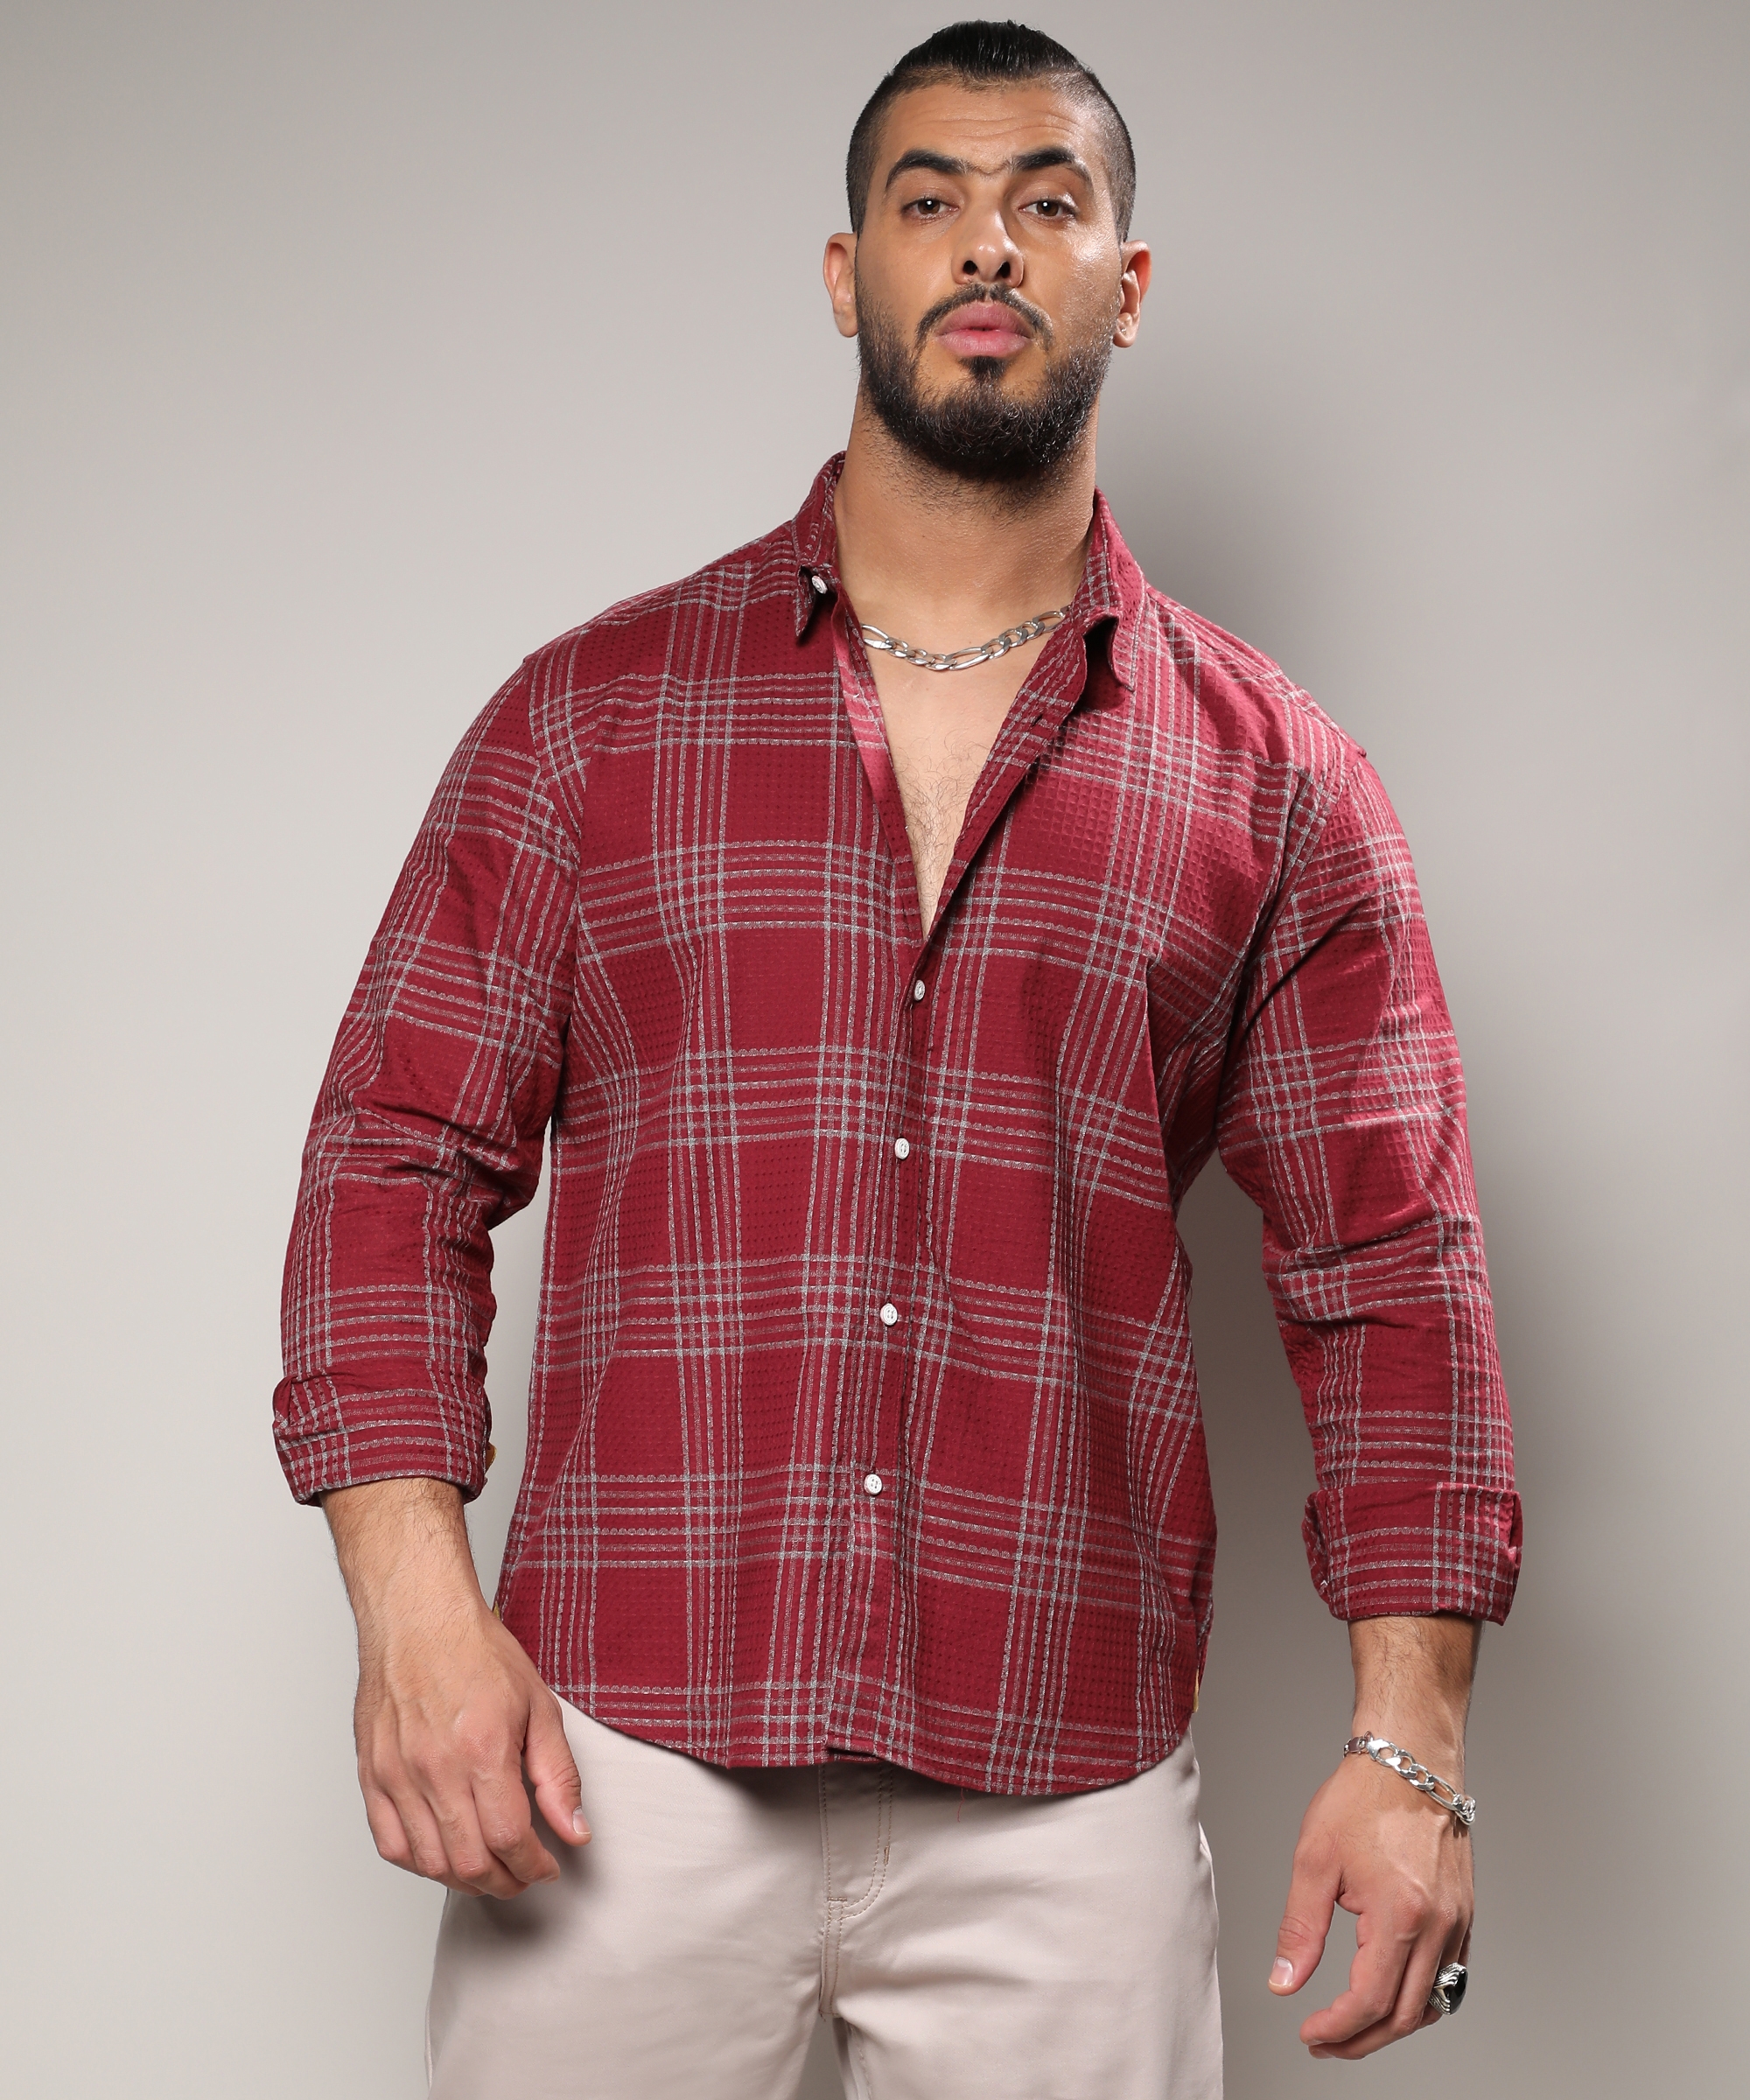 Instafab Plus | Men's Maroon Red Chalk Tartan Plaid Shirt